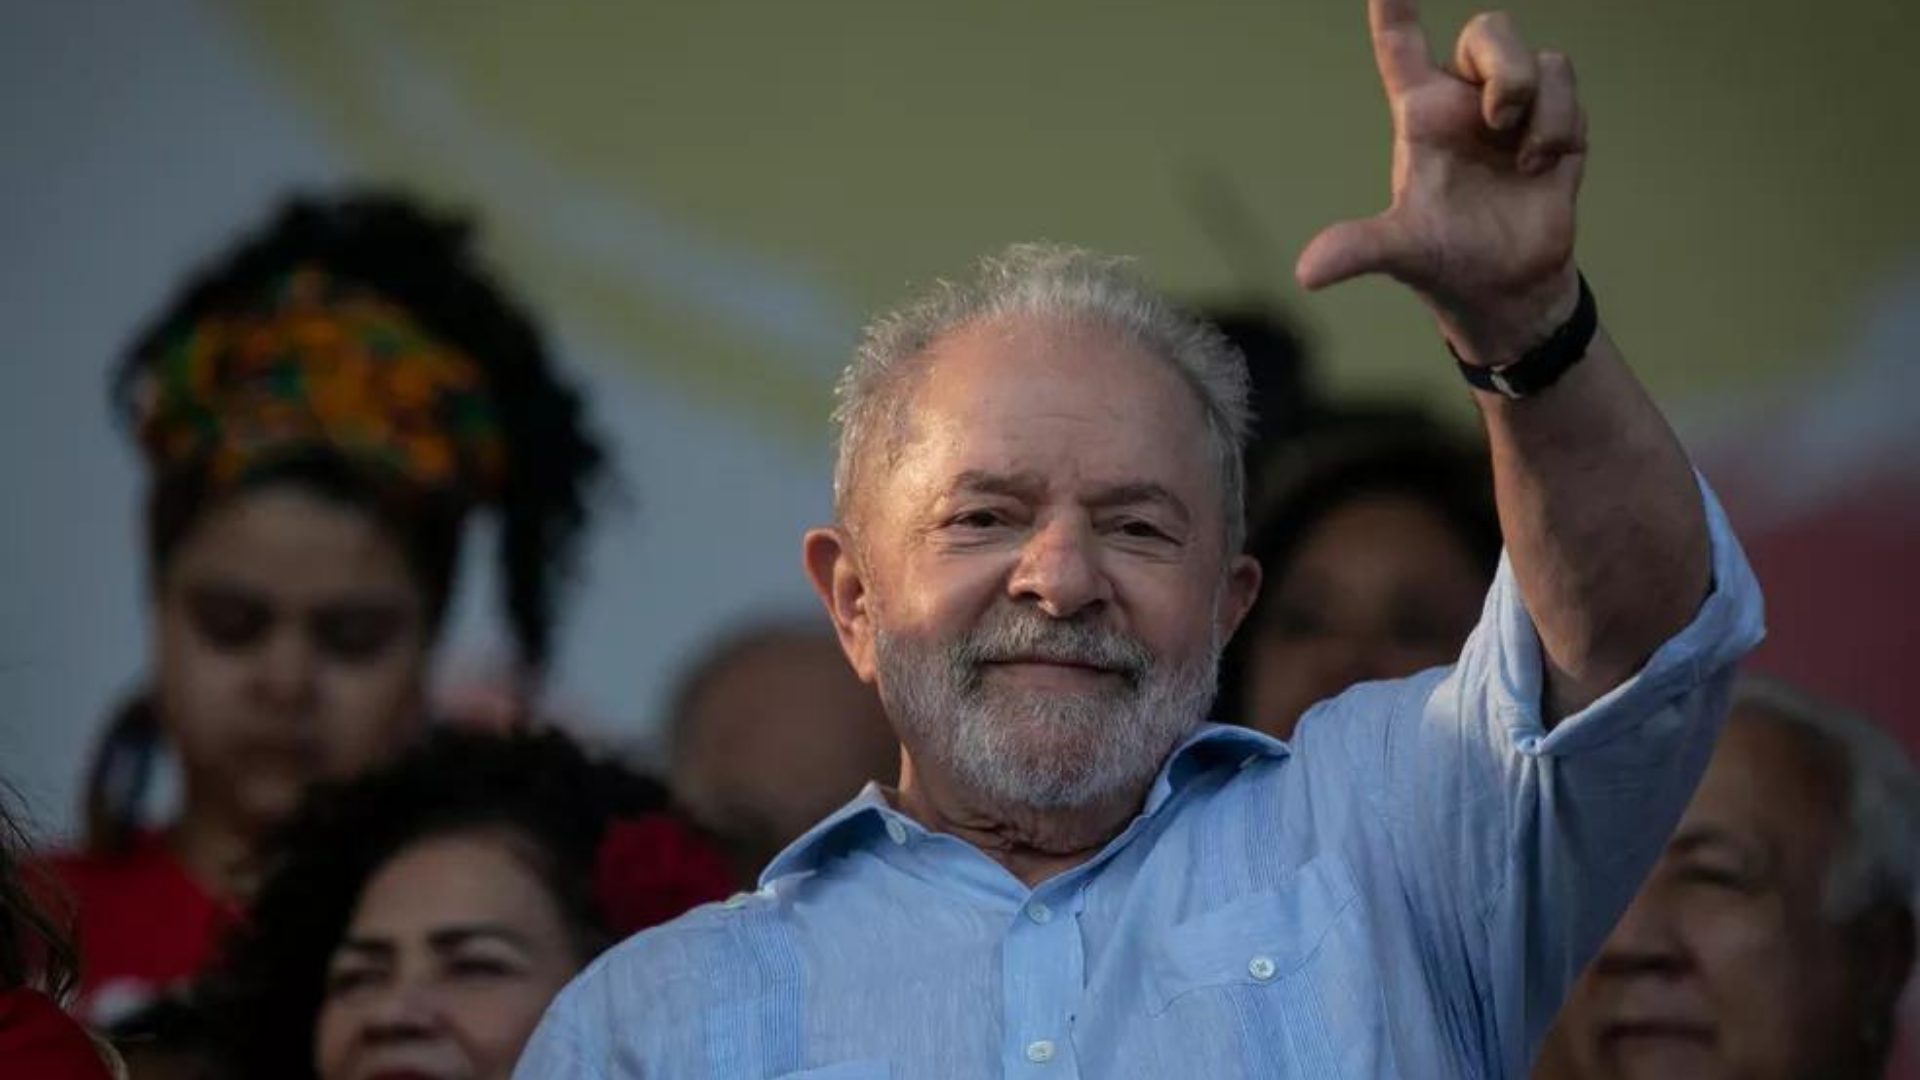 Presença de Lula no Rio atrai multidão. Foto de Lula fazendo o sinal d eL com a mçae direita e sorrindo. 